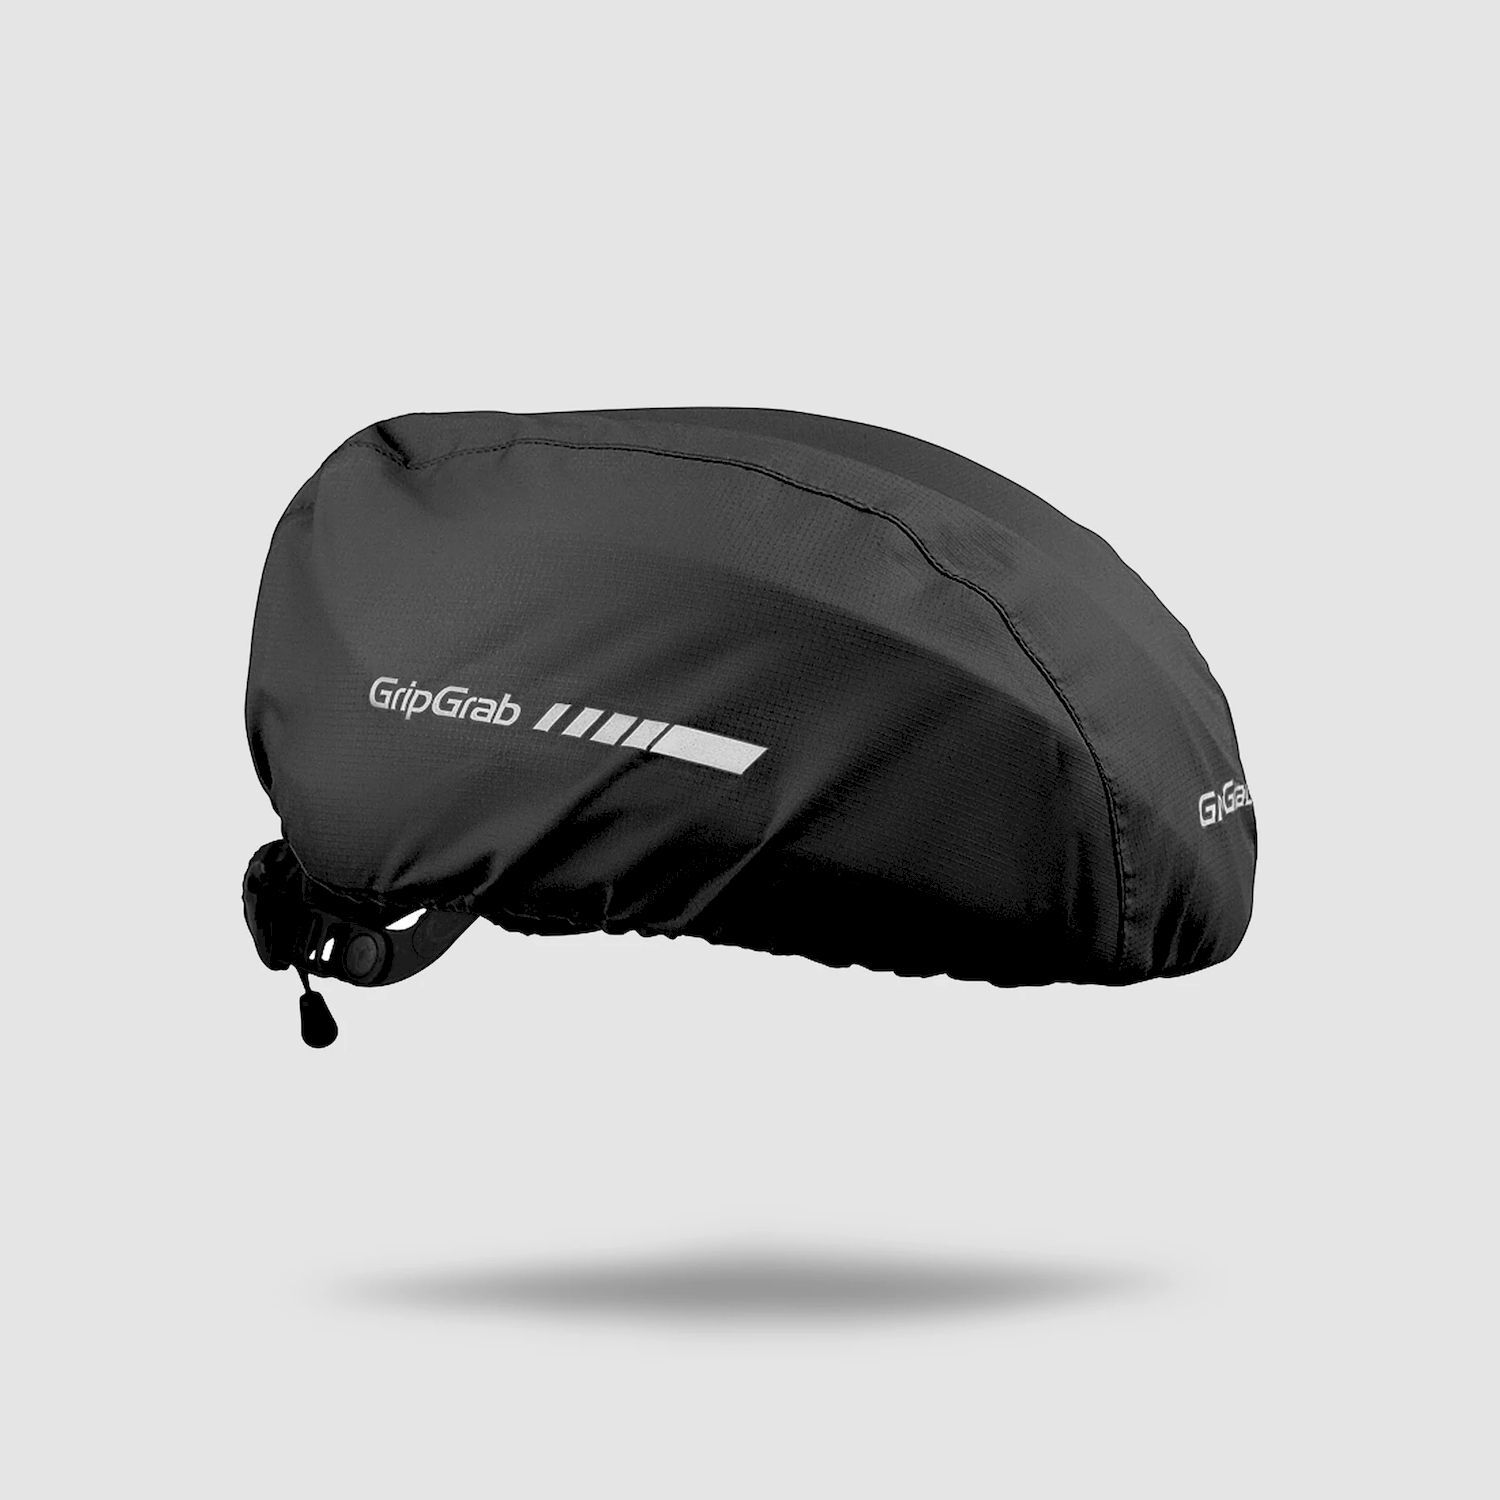 Grip Grab Waterproof Helmet Cover